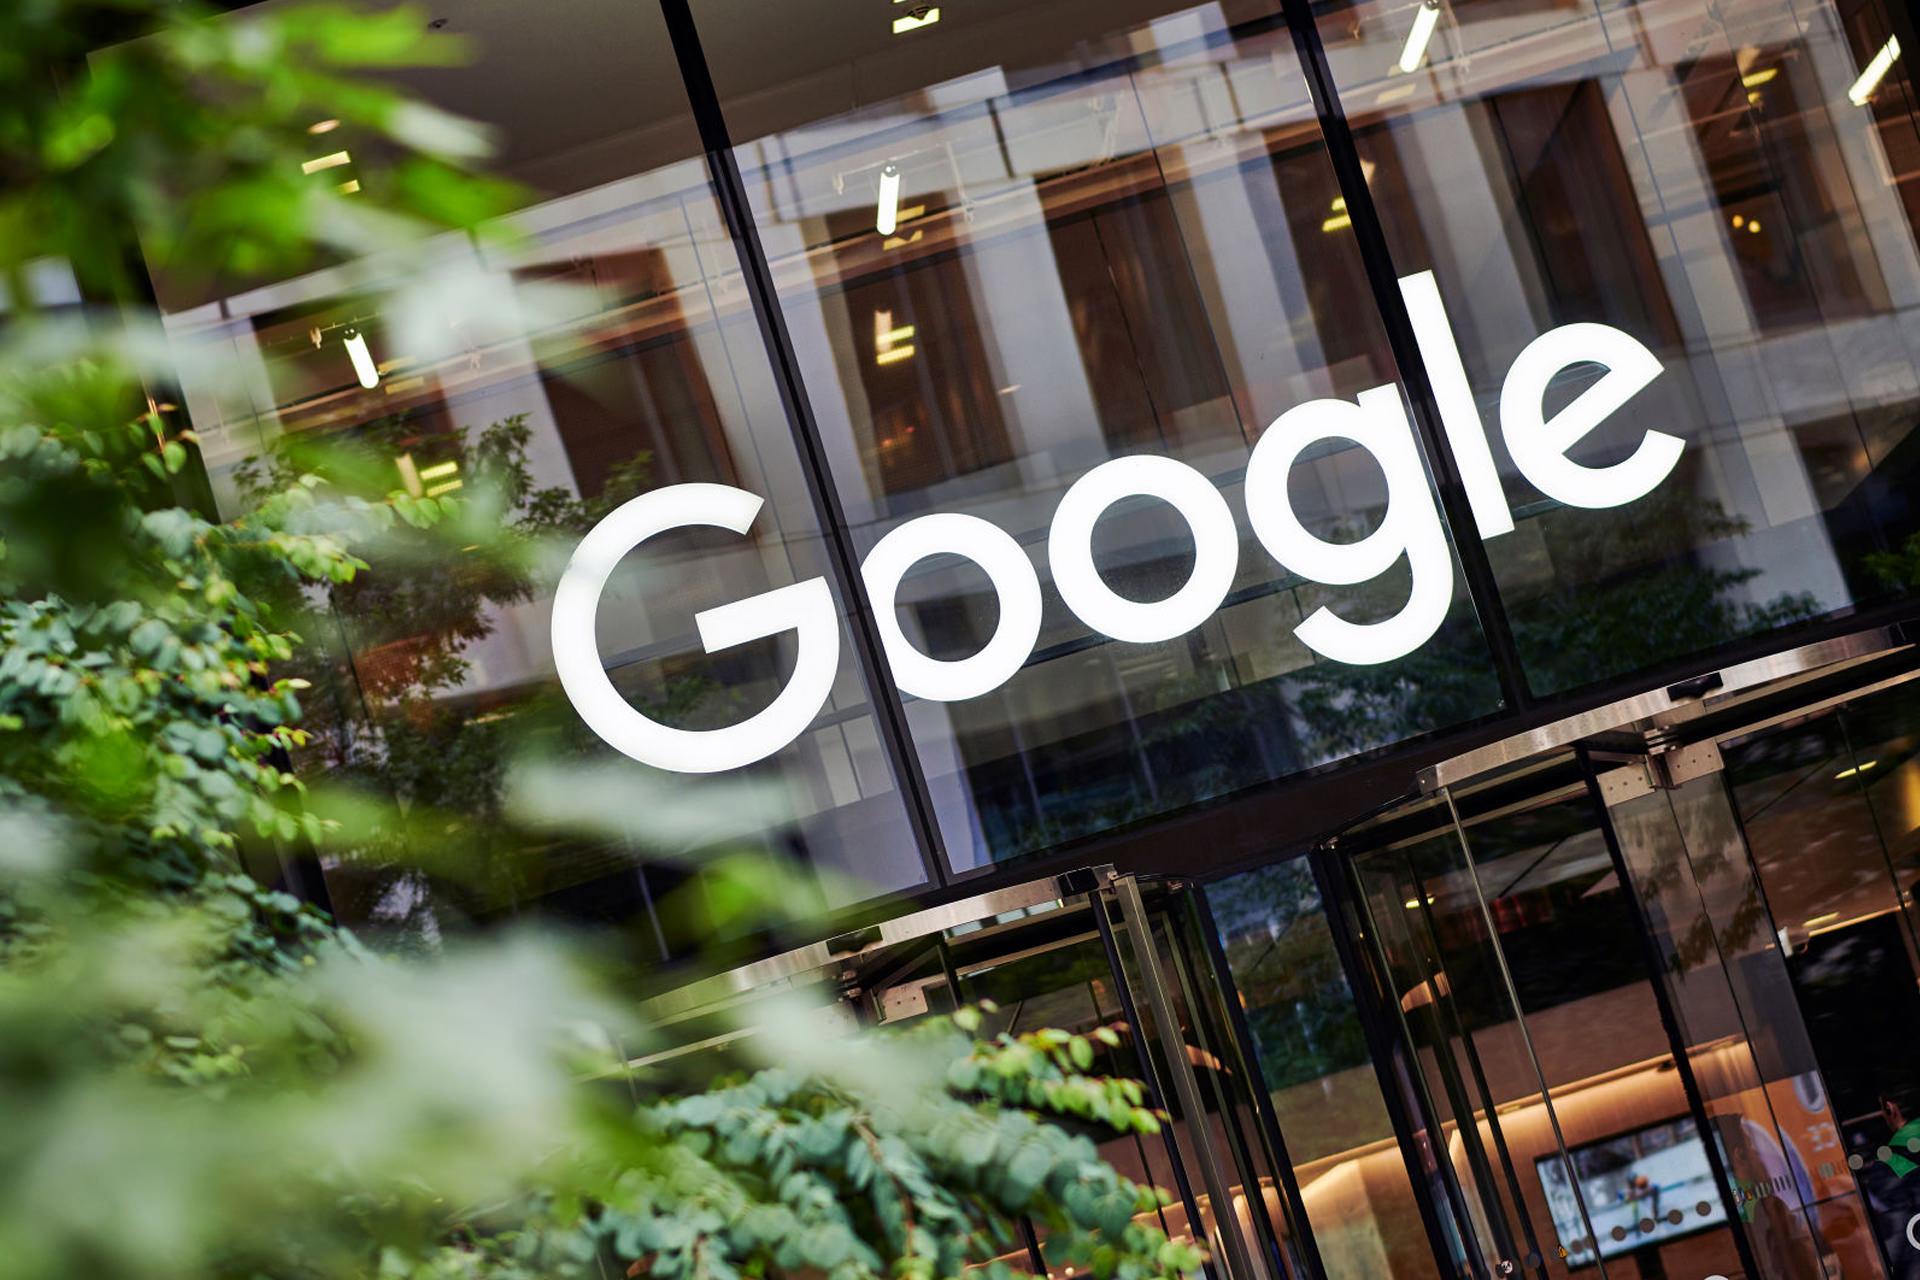 لوگو گوگل / Google روی ساختمان شرکت روز روشن درخت